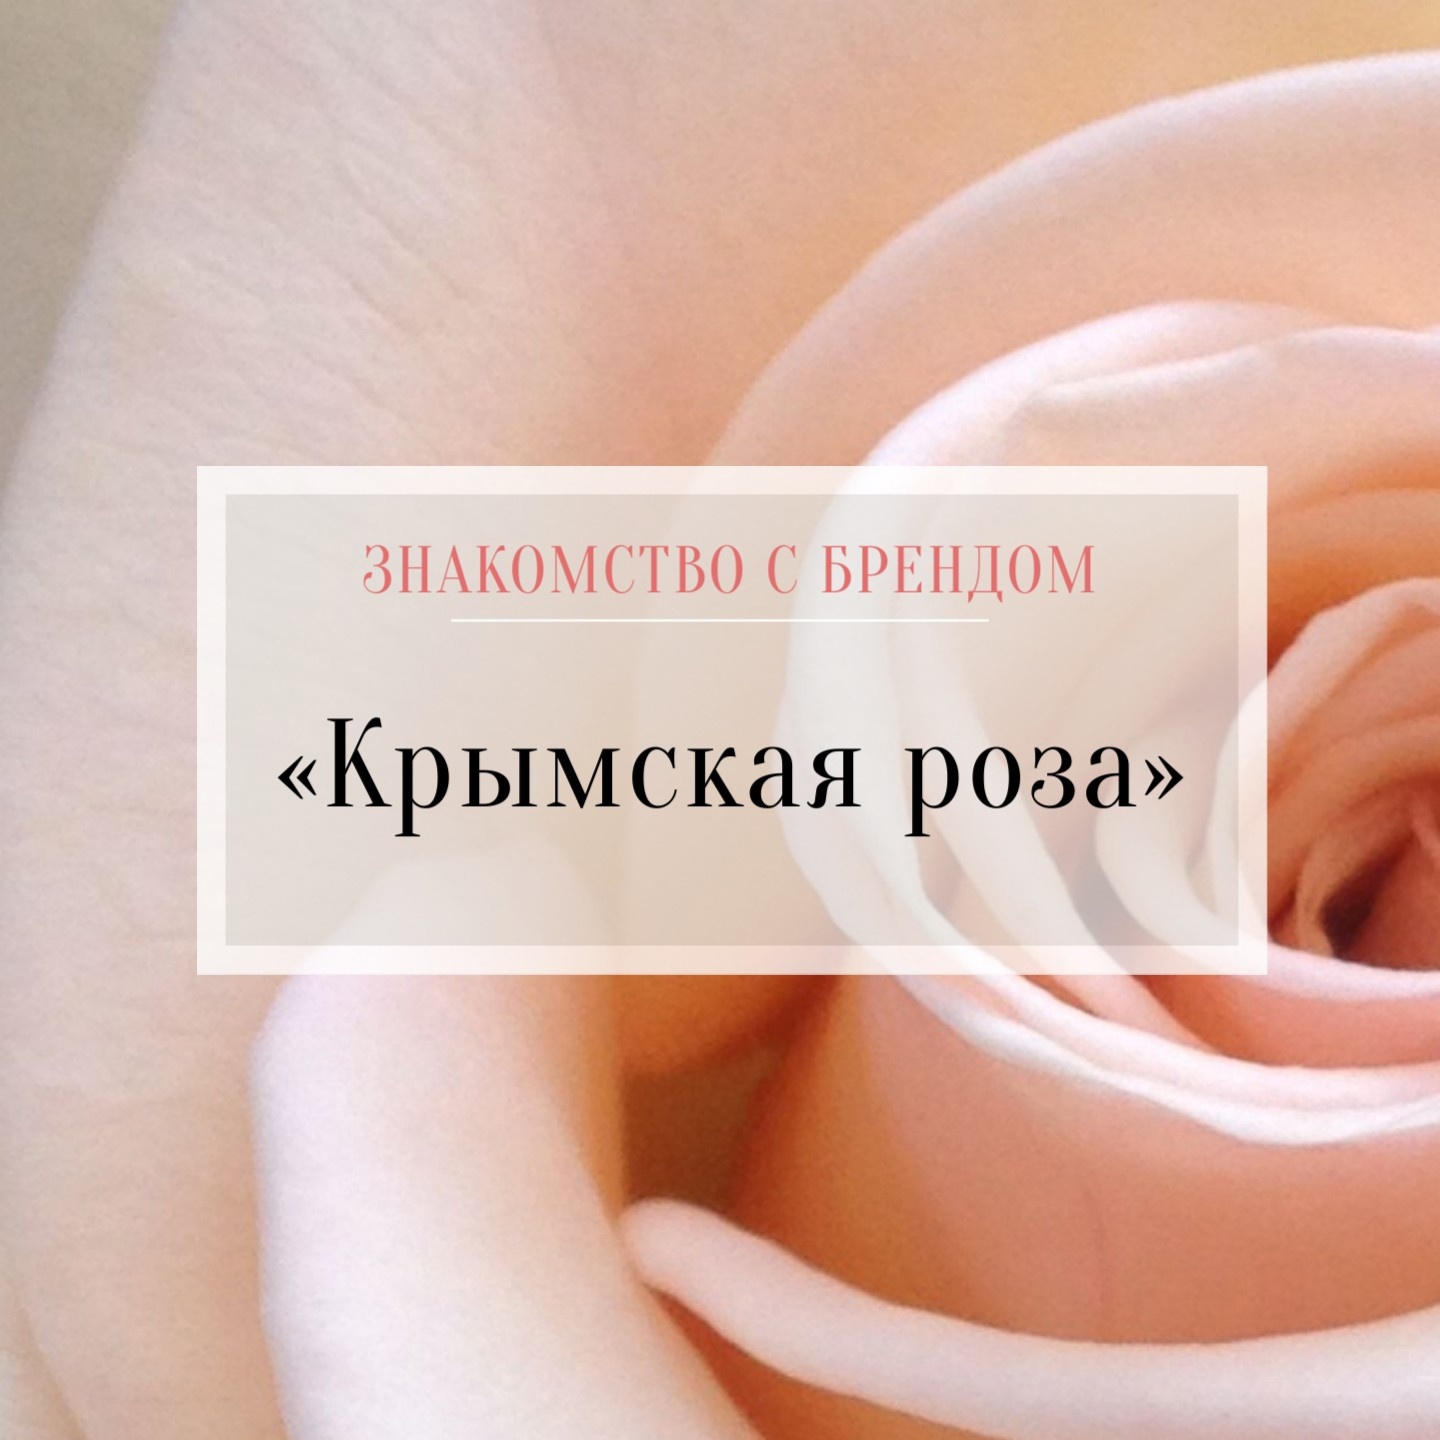 Косметика Крымская роза